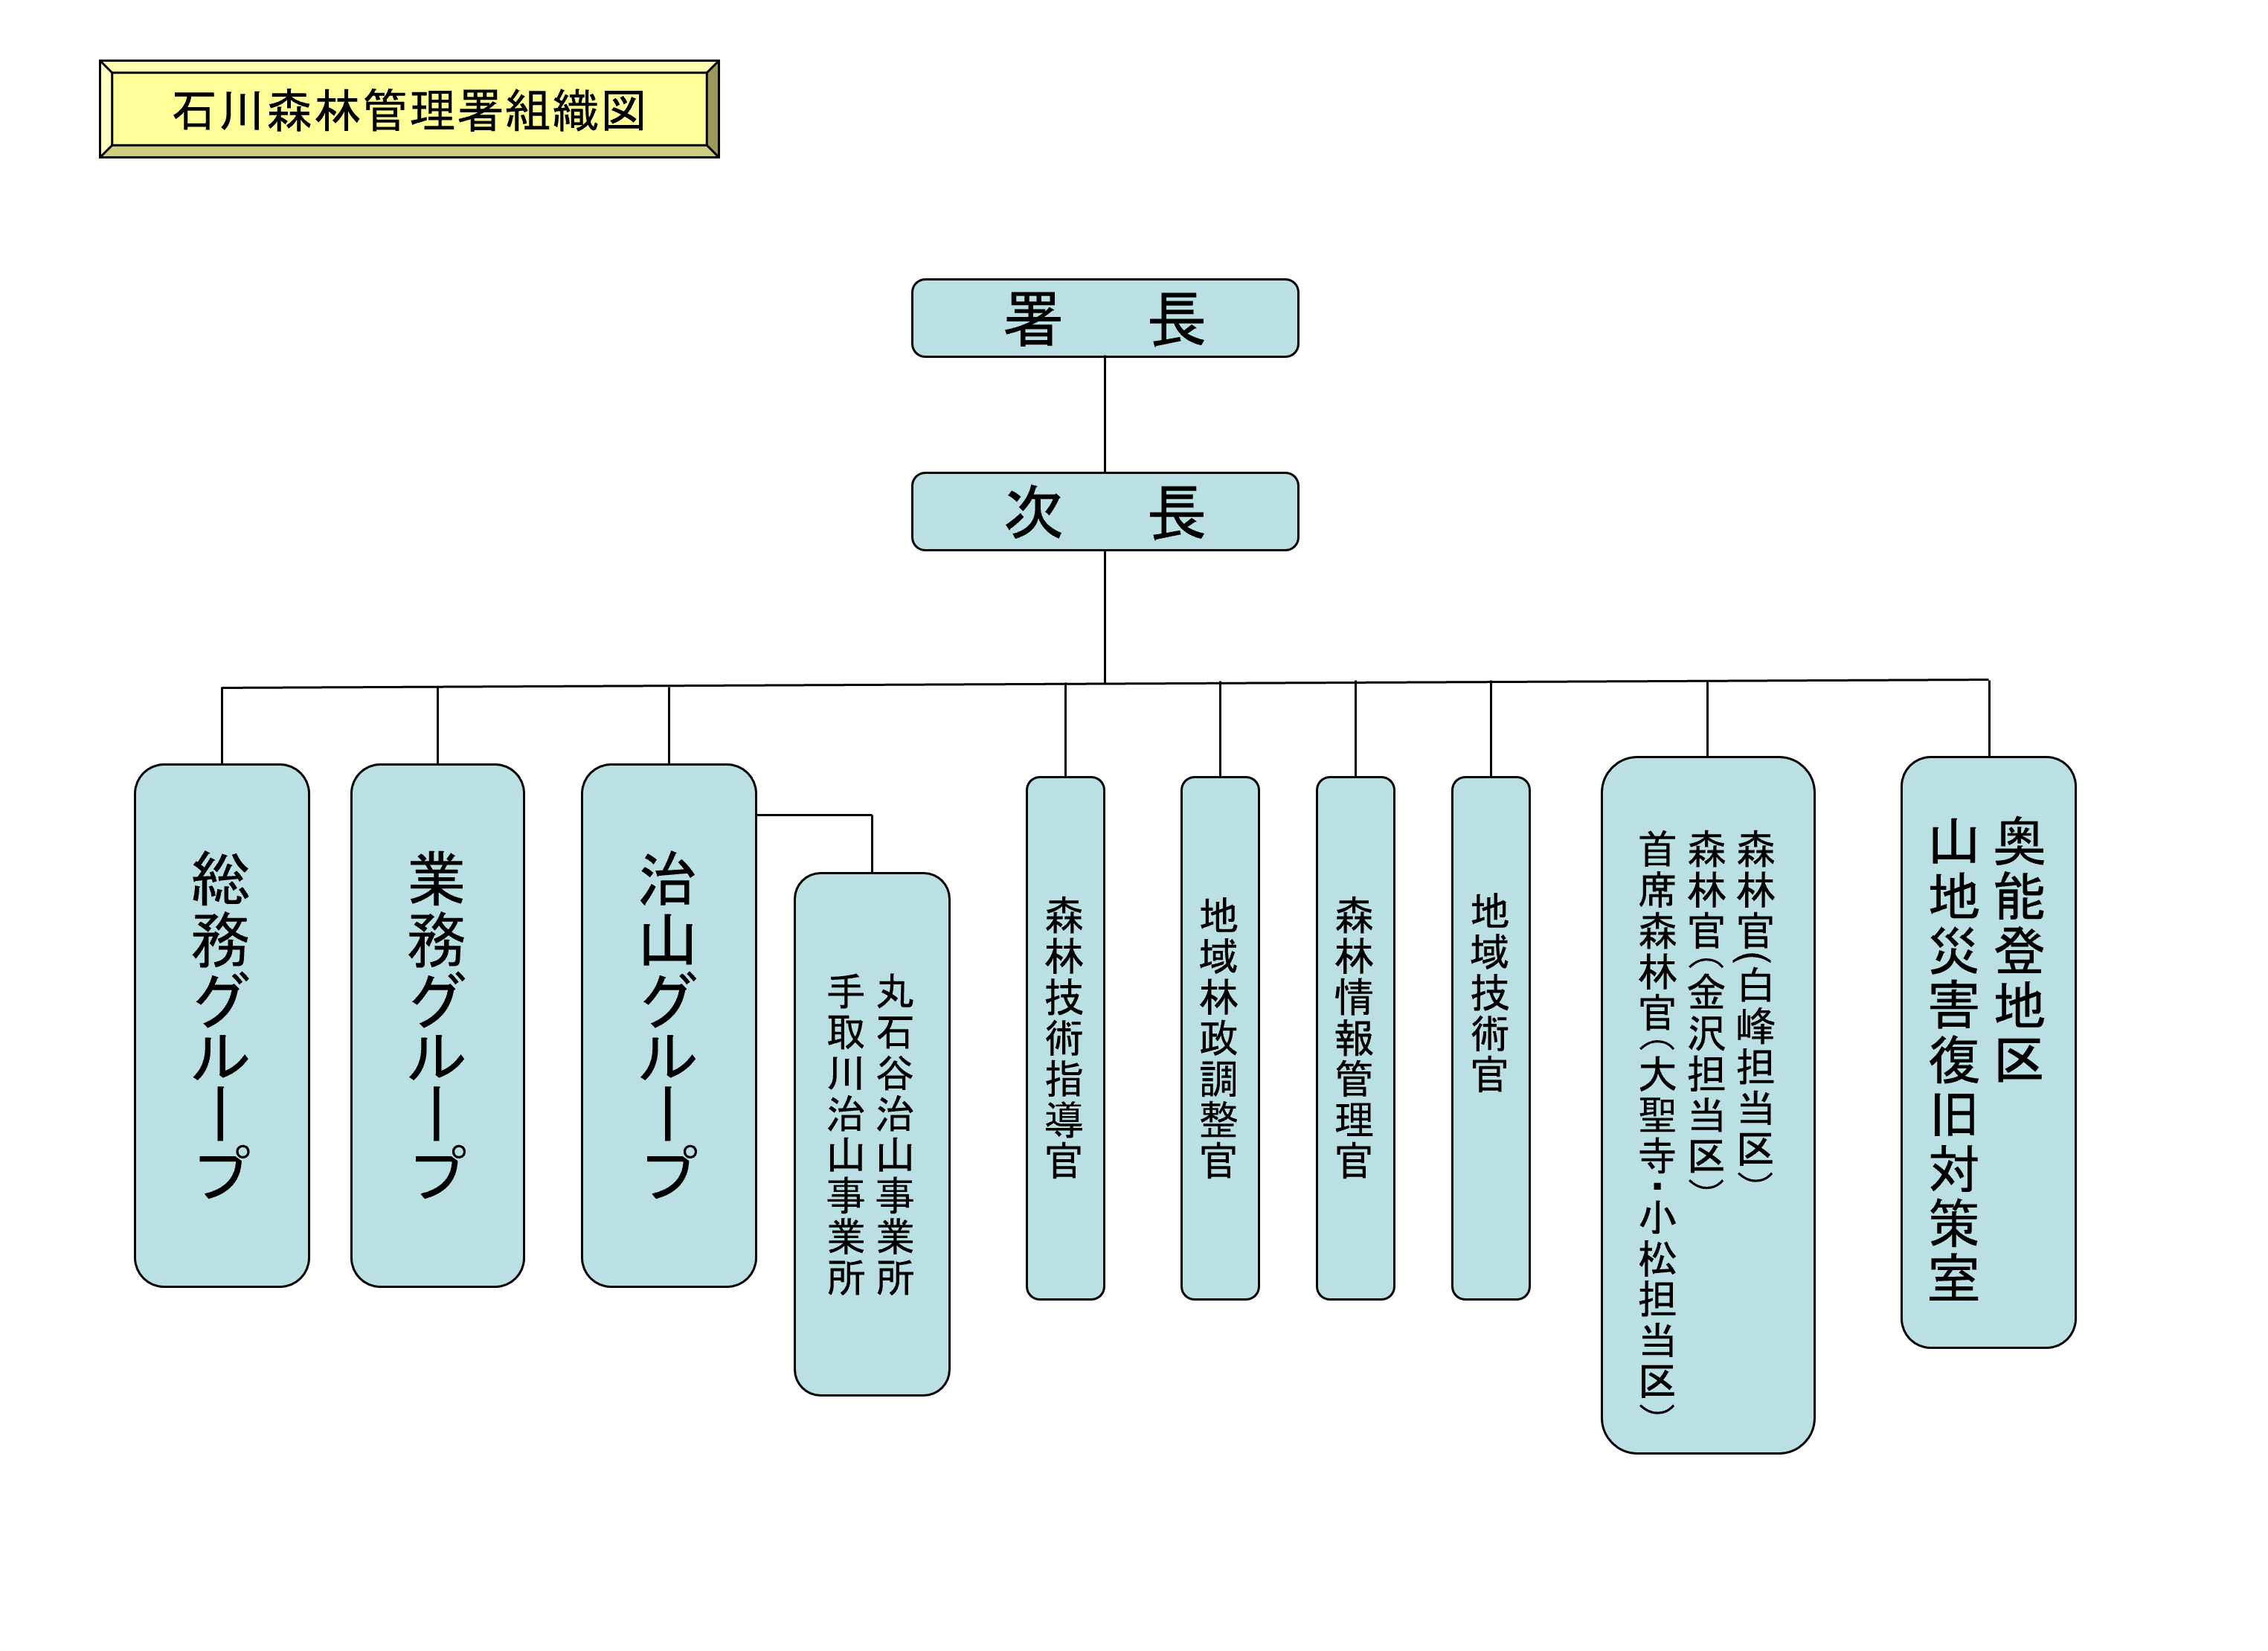 石川森林管理署組織図